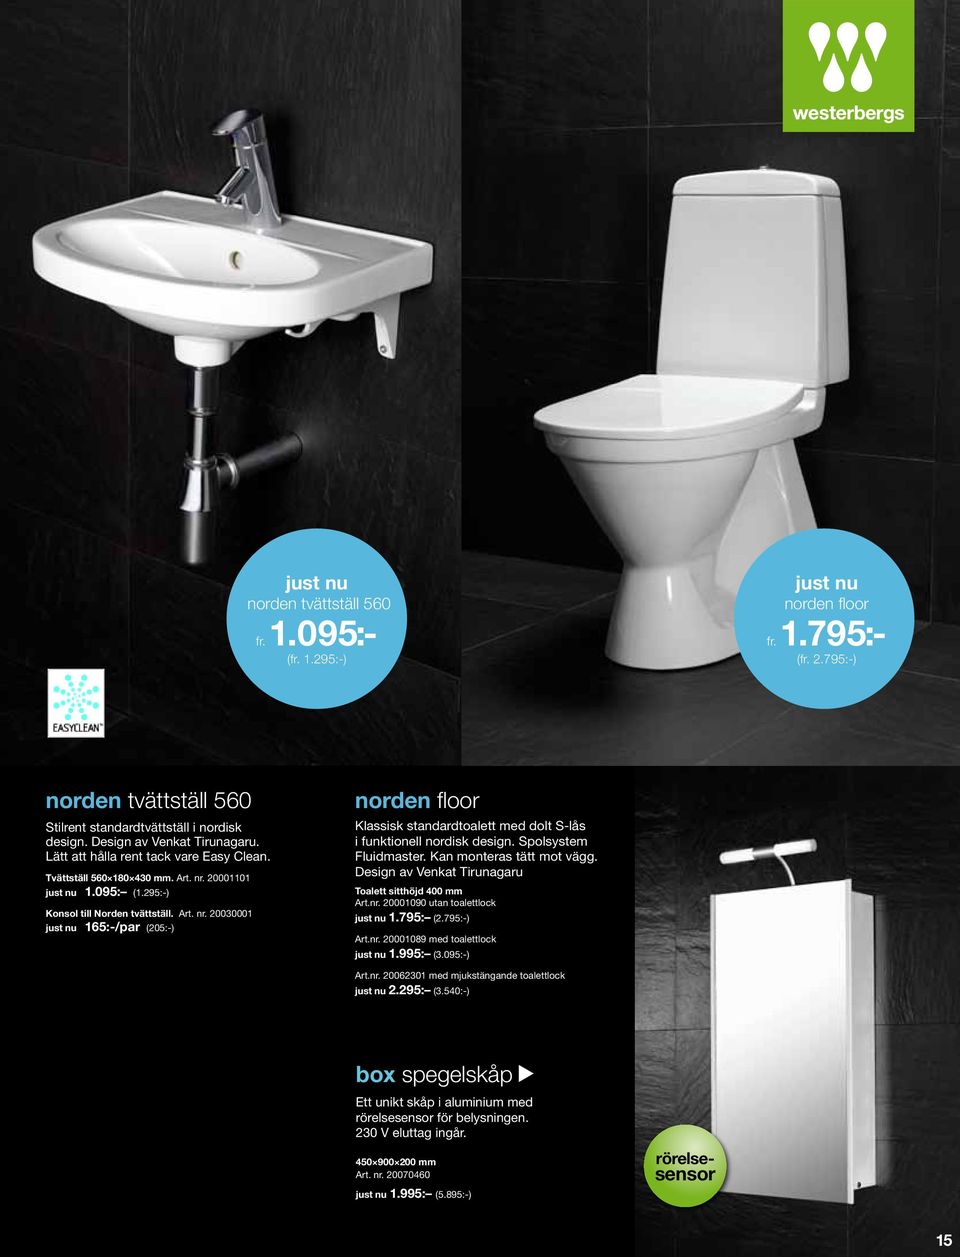 Spolsystem Fluidmaster. Kan monteras tätt mot vägg. Design av Venkat Tirunagaru Toalett sitthöjd 400 mm Art.nr. 20001090 utan toalettlock 1.795: (2.795:-) Art.nr. 20001089 med toalettlock 1.995: (3.